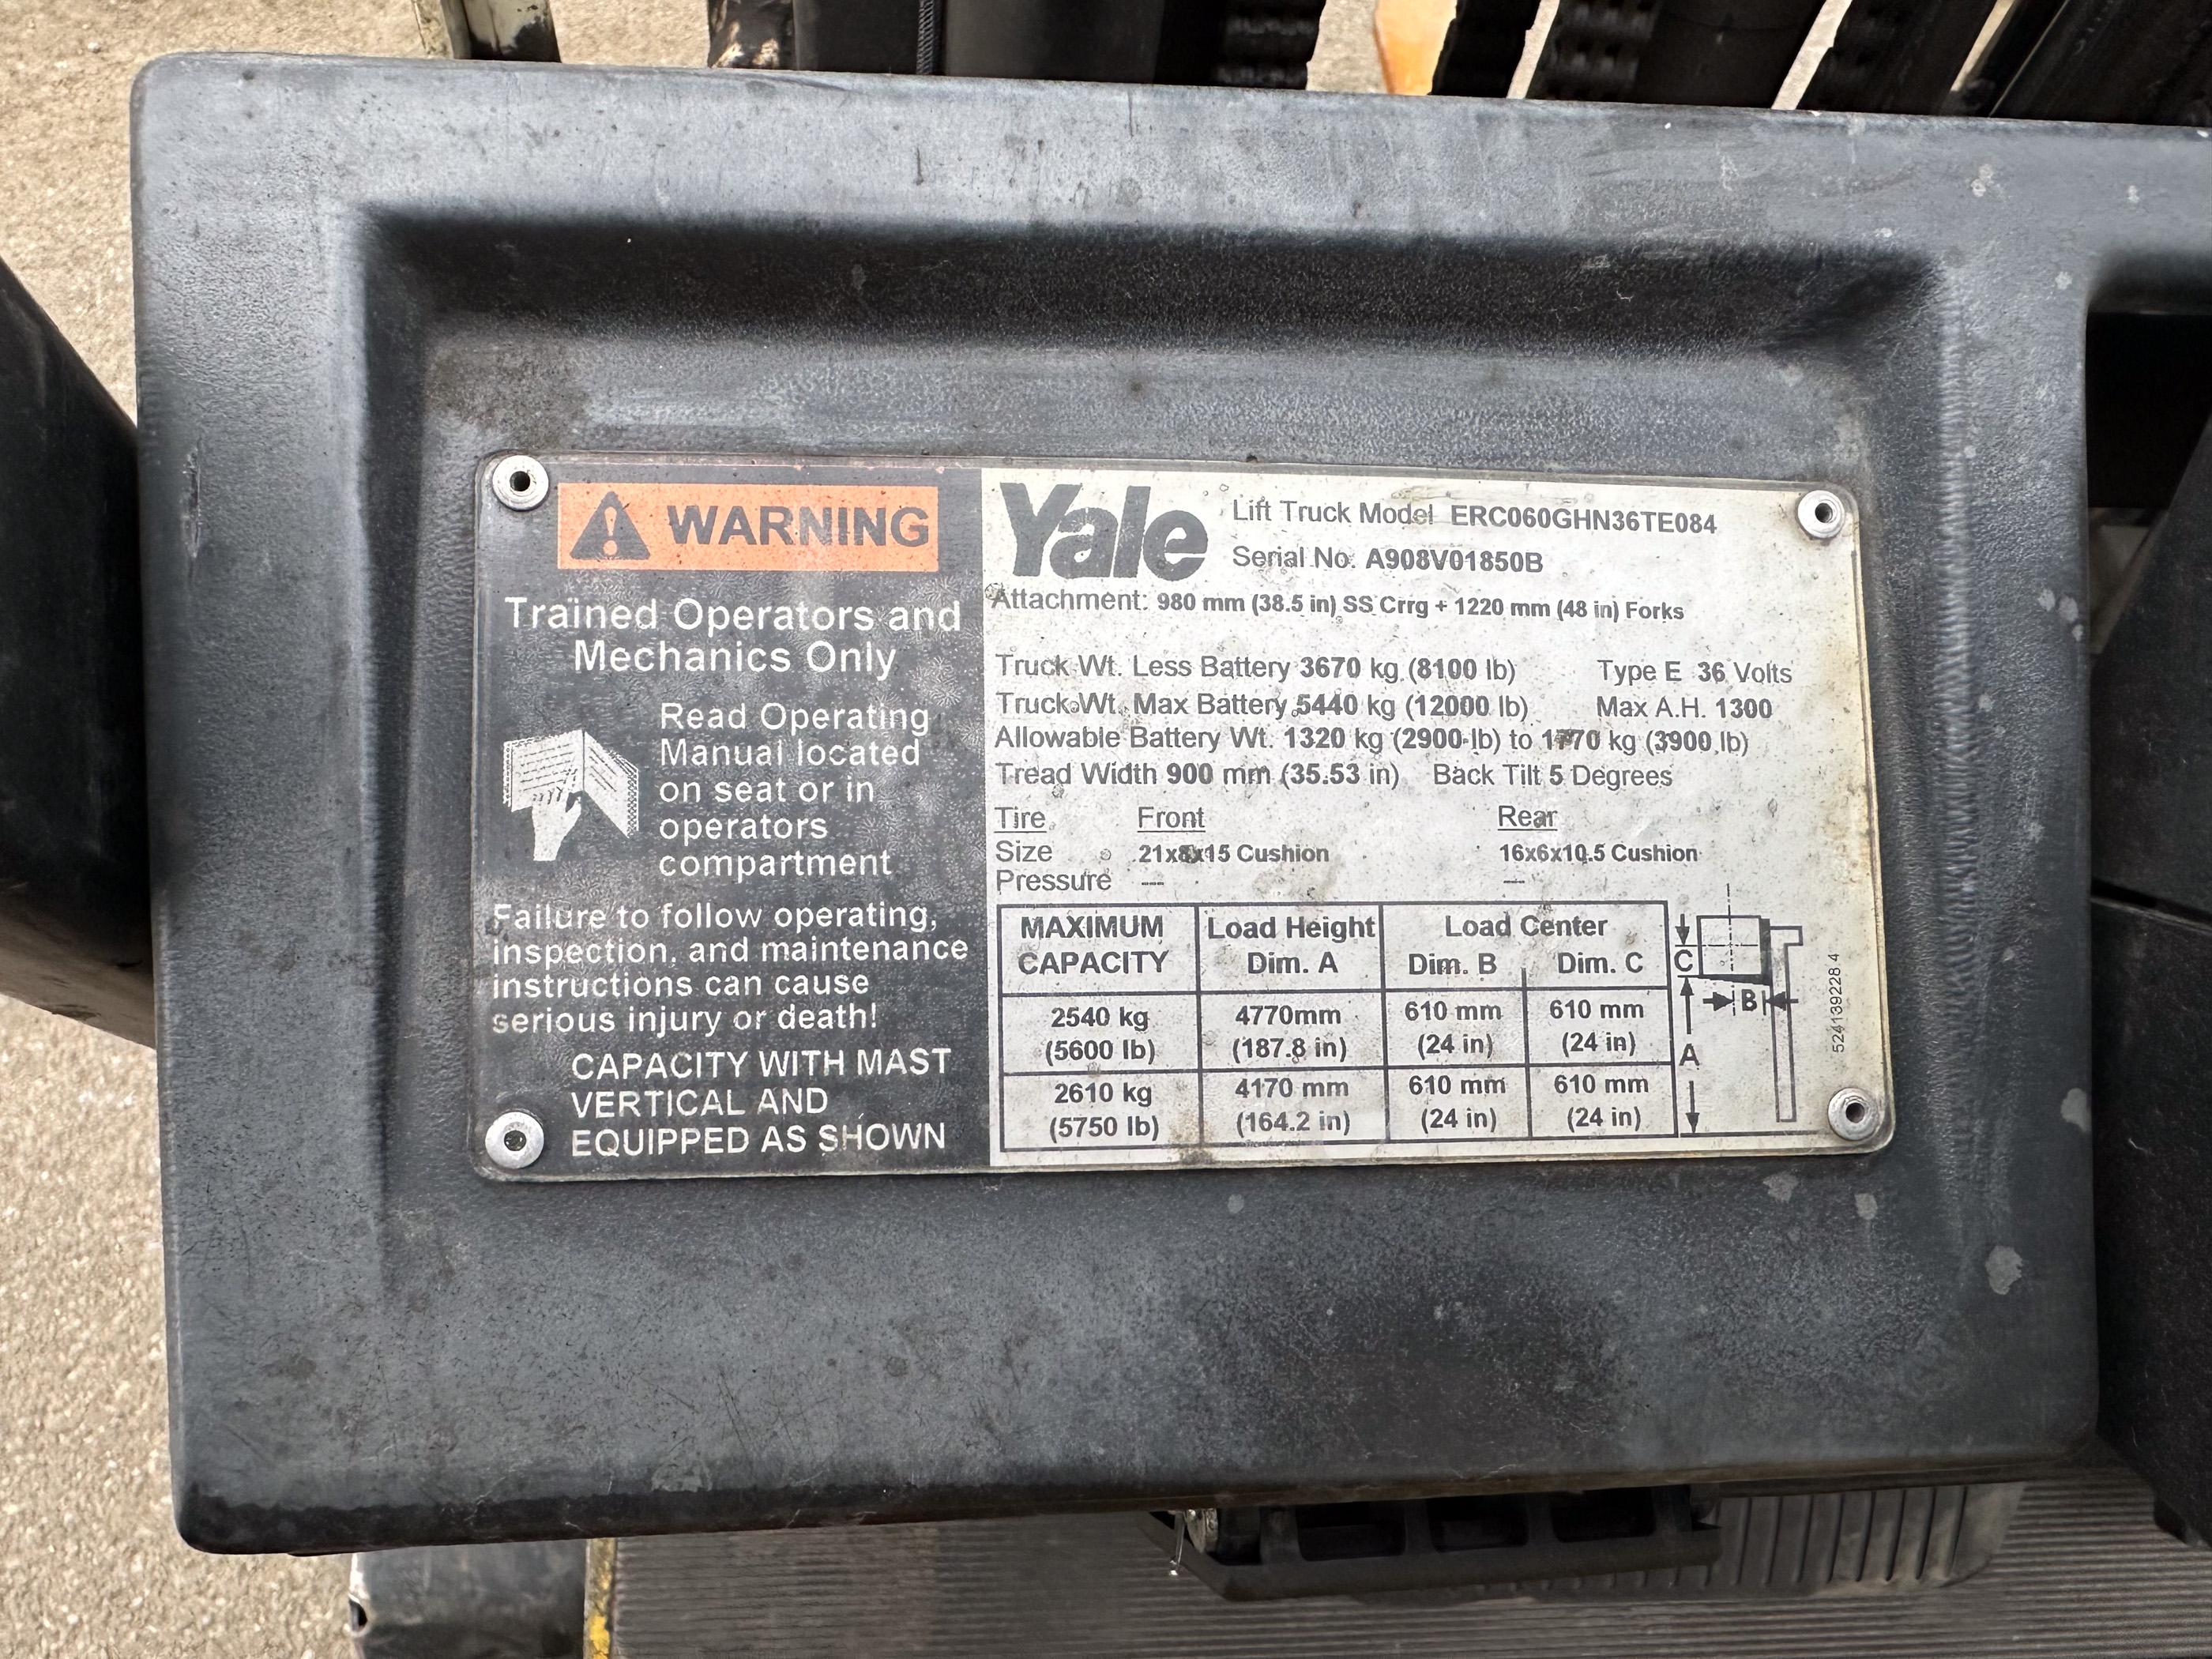 Yale 6000lb. 36V Electric Forklift